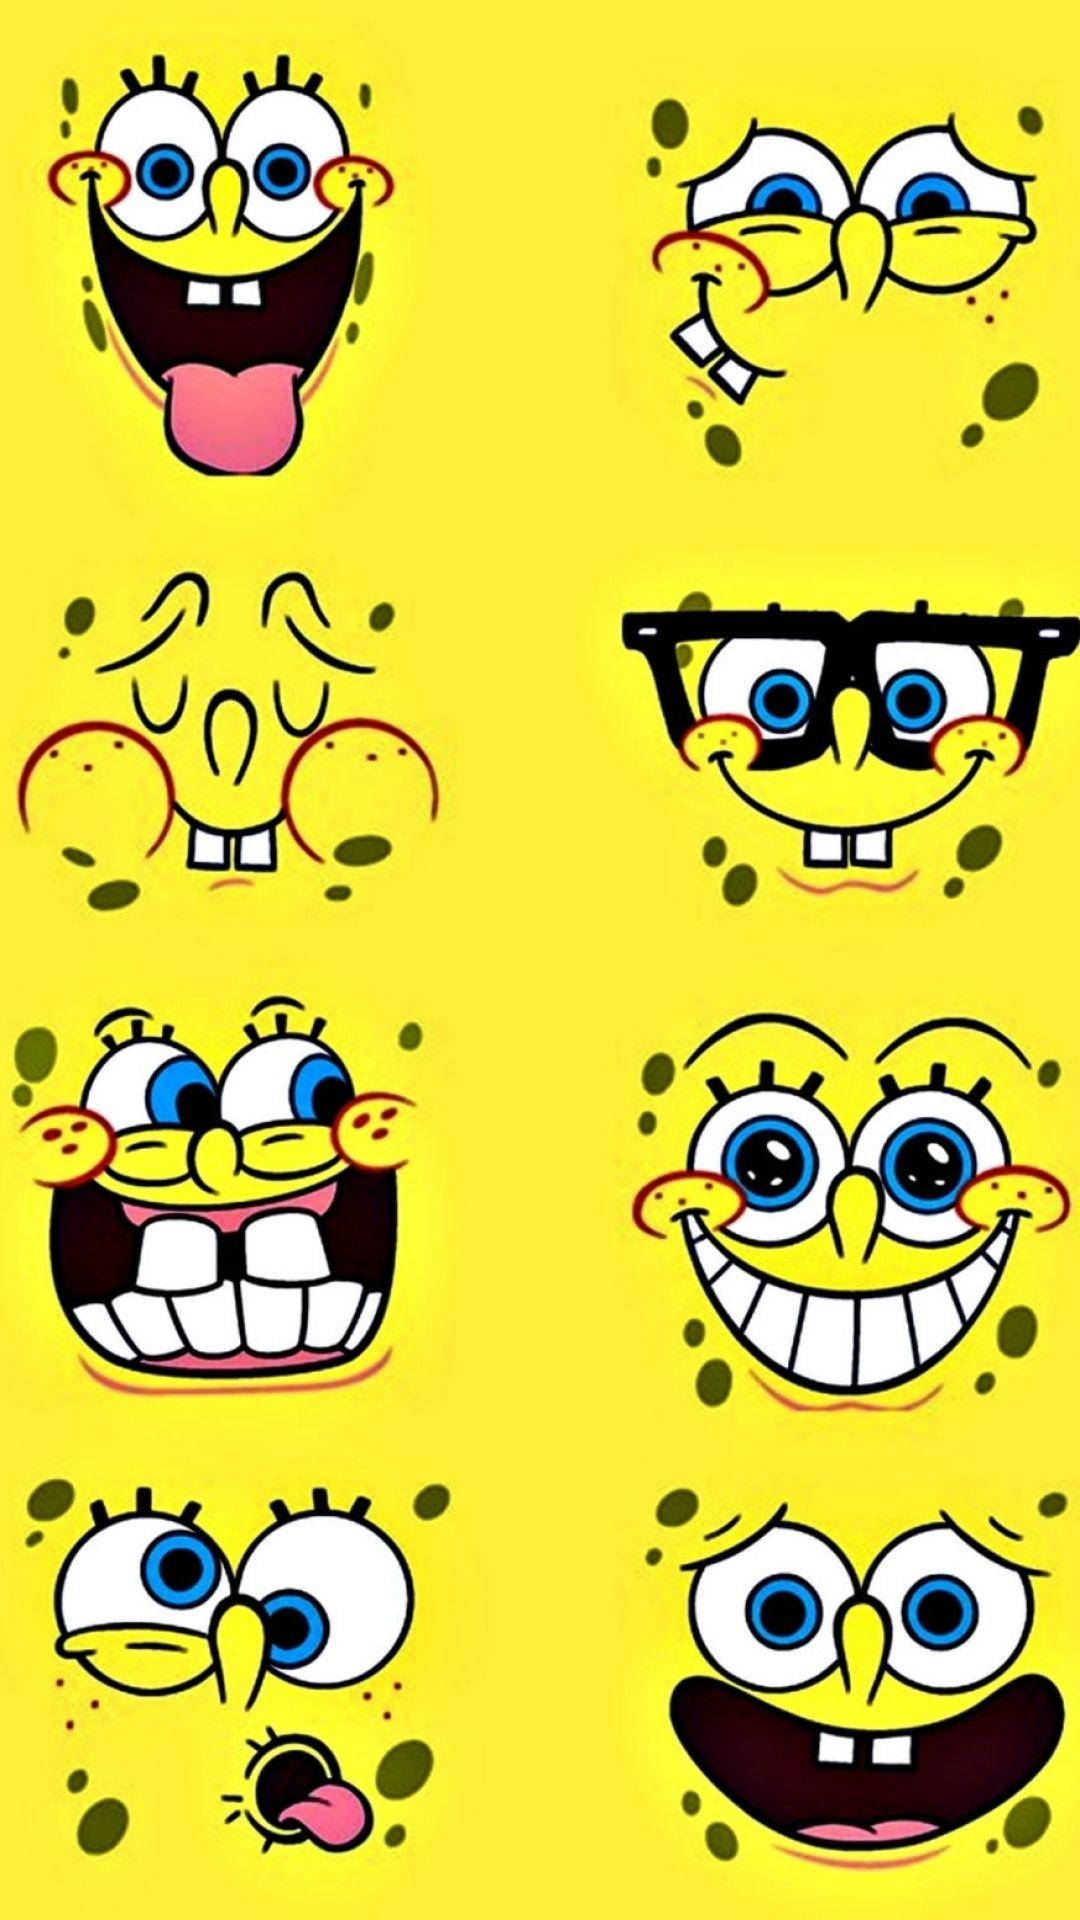 6 Spongebob Squarepants Apple/iPhone 7 Plus